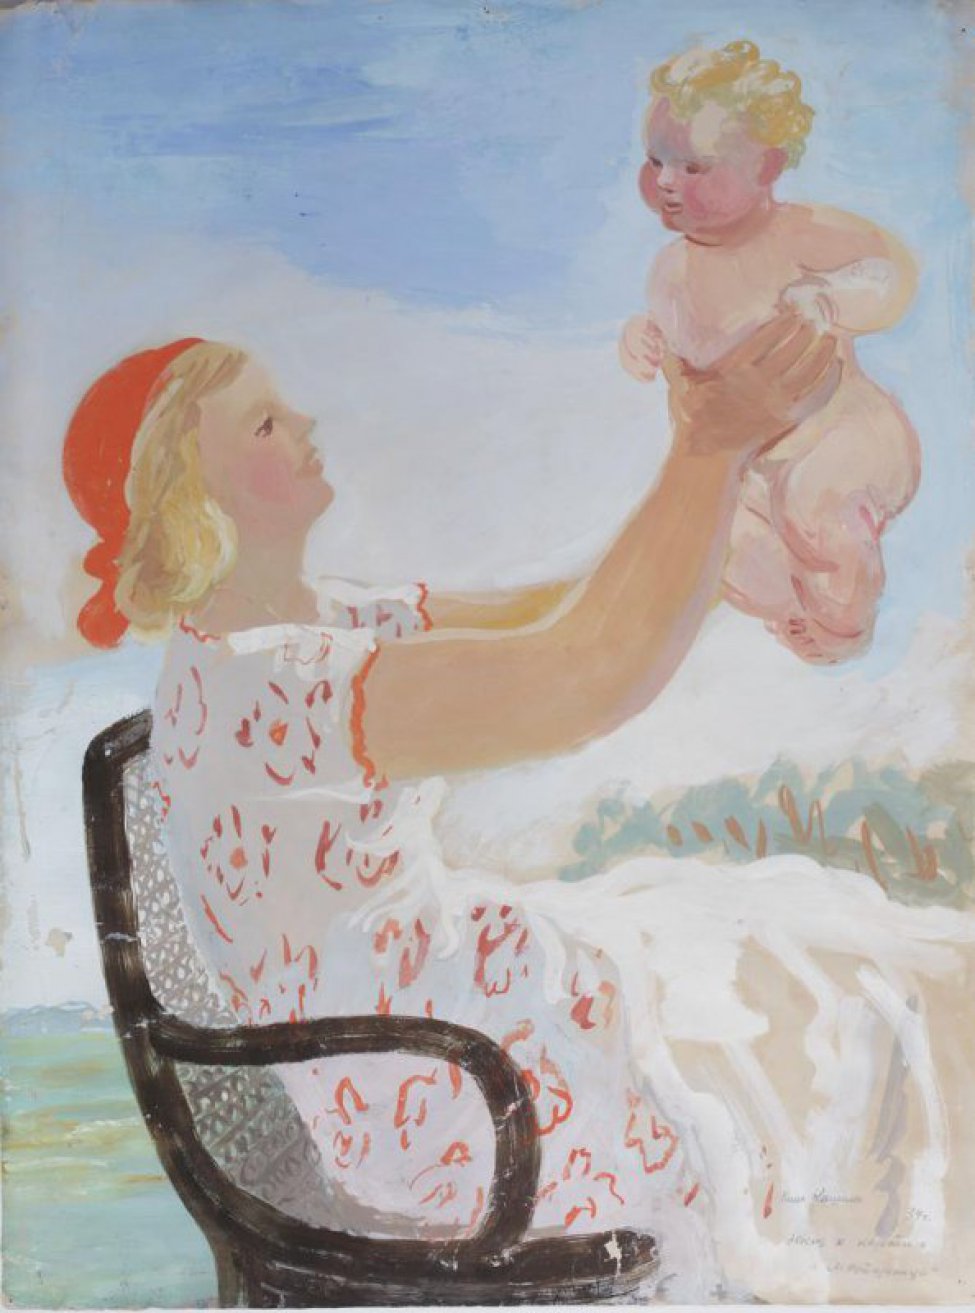 Изображена молодая женщина в светлом платье и красной косынке, в легком повороте вправо, сидящая в плетеном кресле. В вытянутых вперед и немного вверх руках она держит обнаженного кудрявого малыша; на коленях лежит белая простынка.